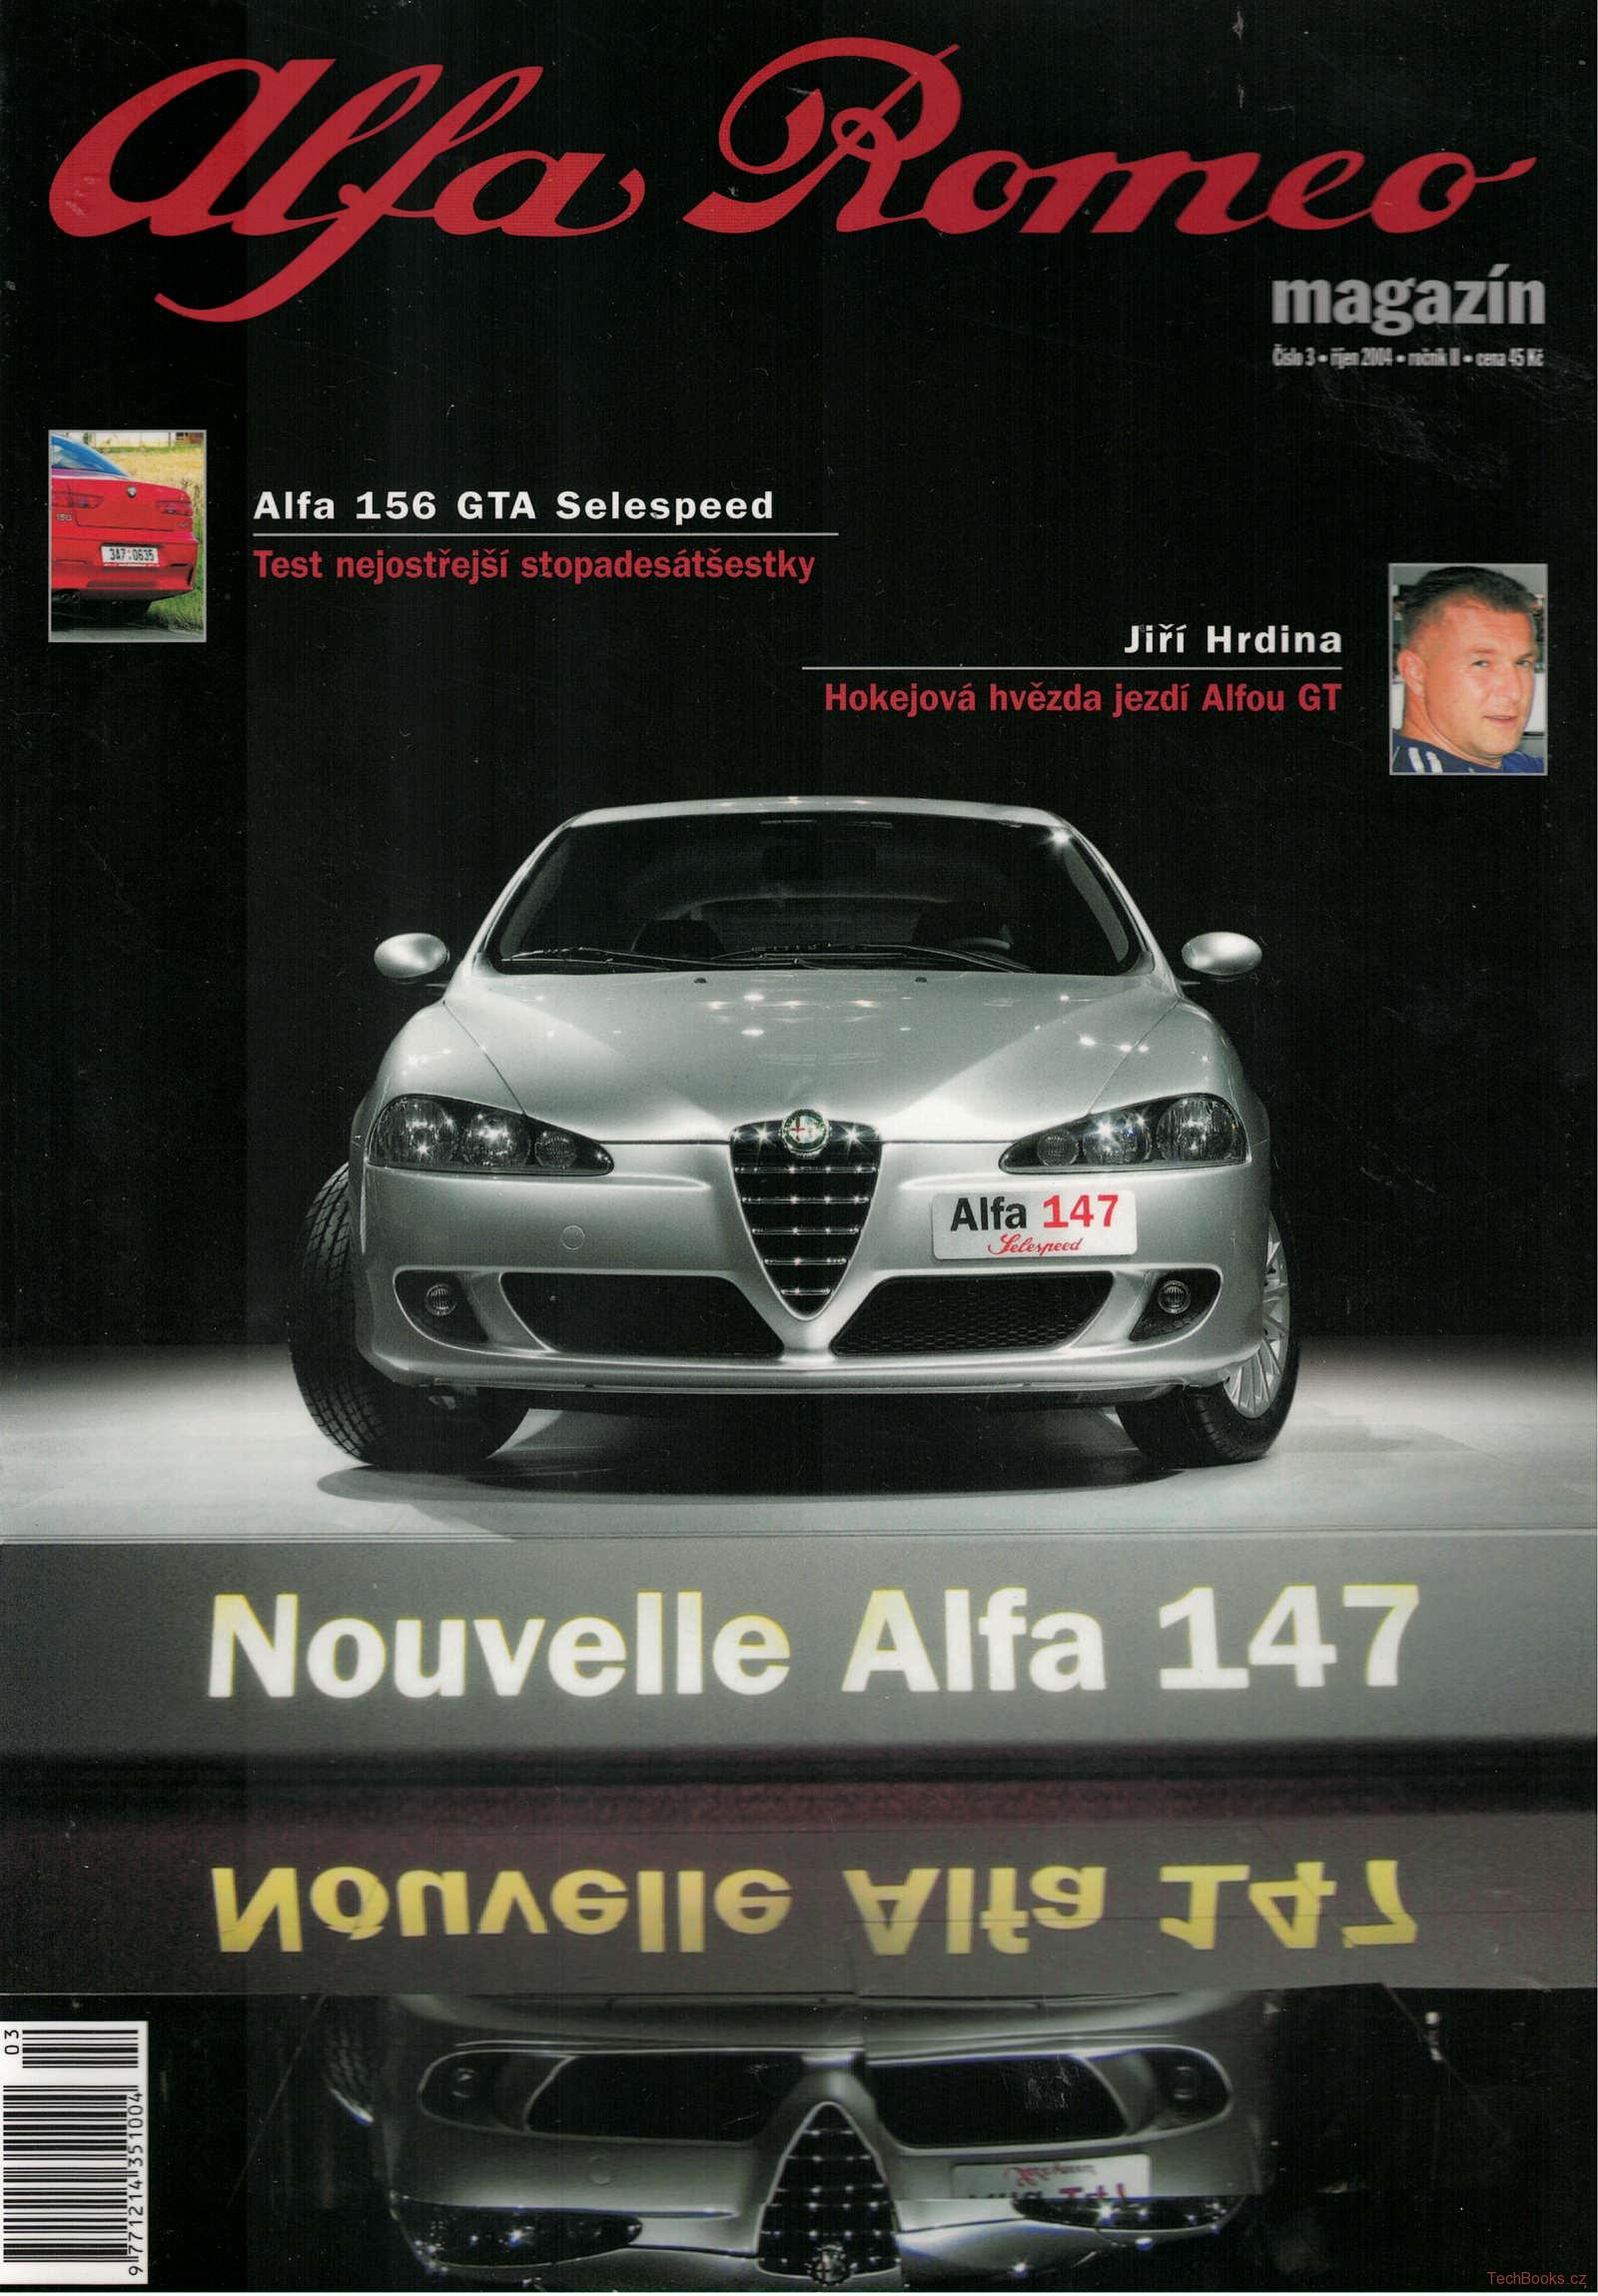 Alfa Romeo magazín 3/2004